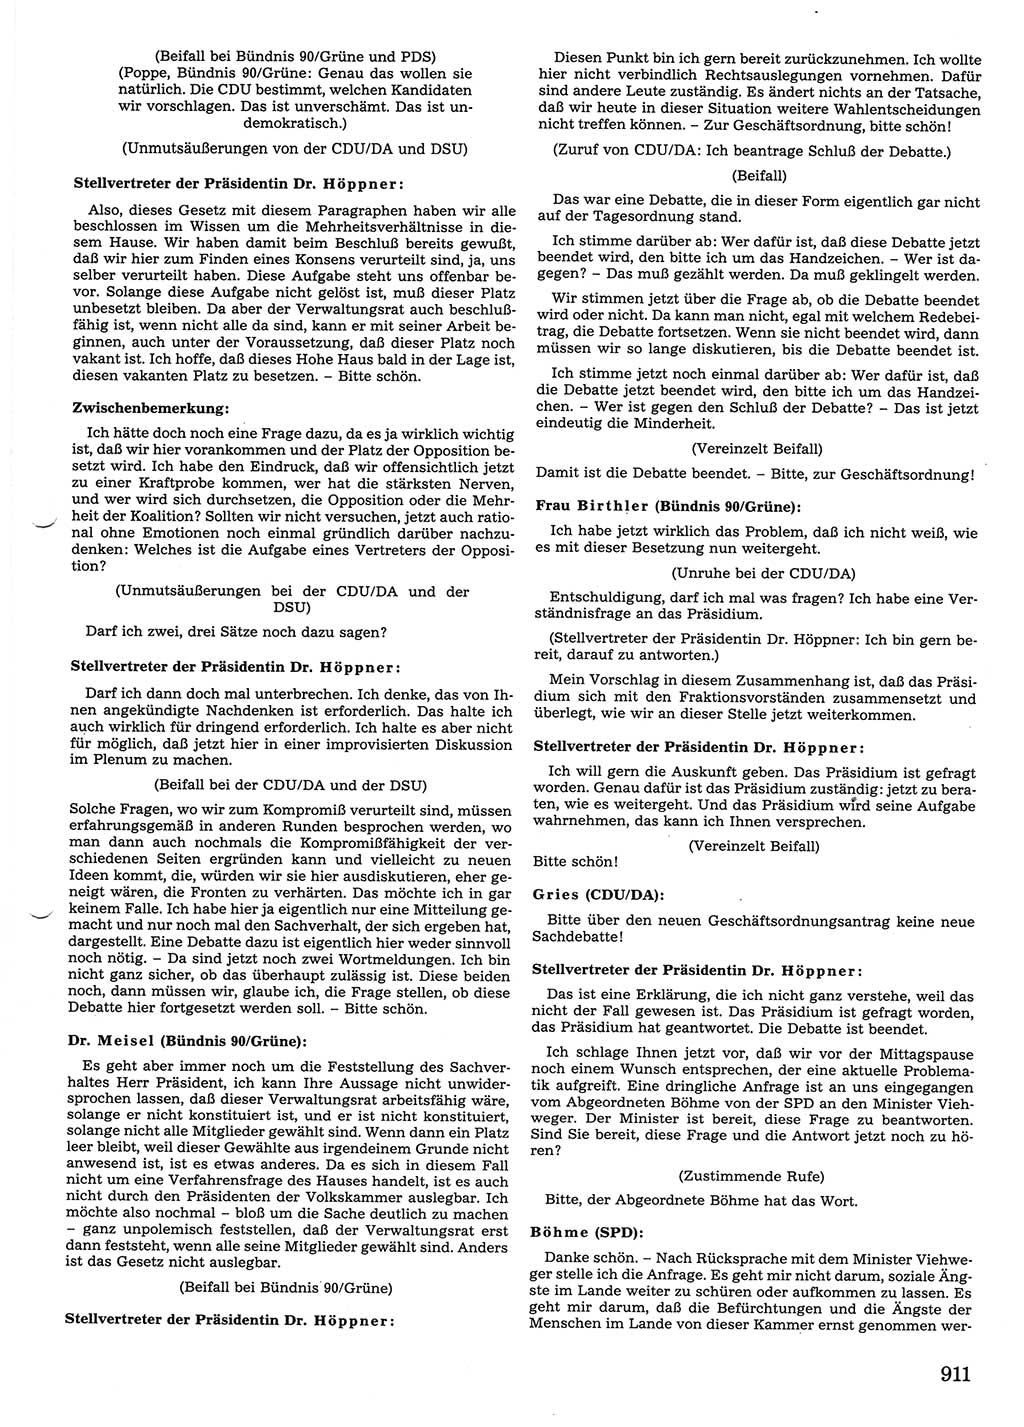 Tagungen der Volkskammer (VK) der Deutschen Demokratischen Republik (DDR), 10. Wahlperiode 1990, Seite 911 (VK. DDR 10. WP. 1990, Prot. Tg. 1-38, 5.4.-2.10.1990, S. 911)